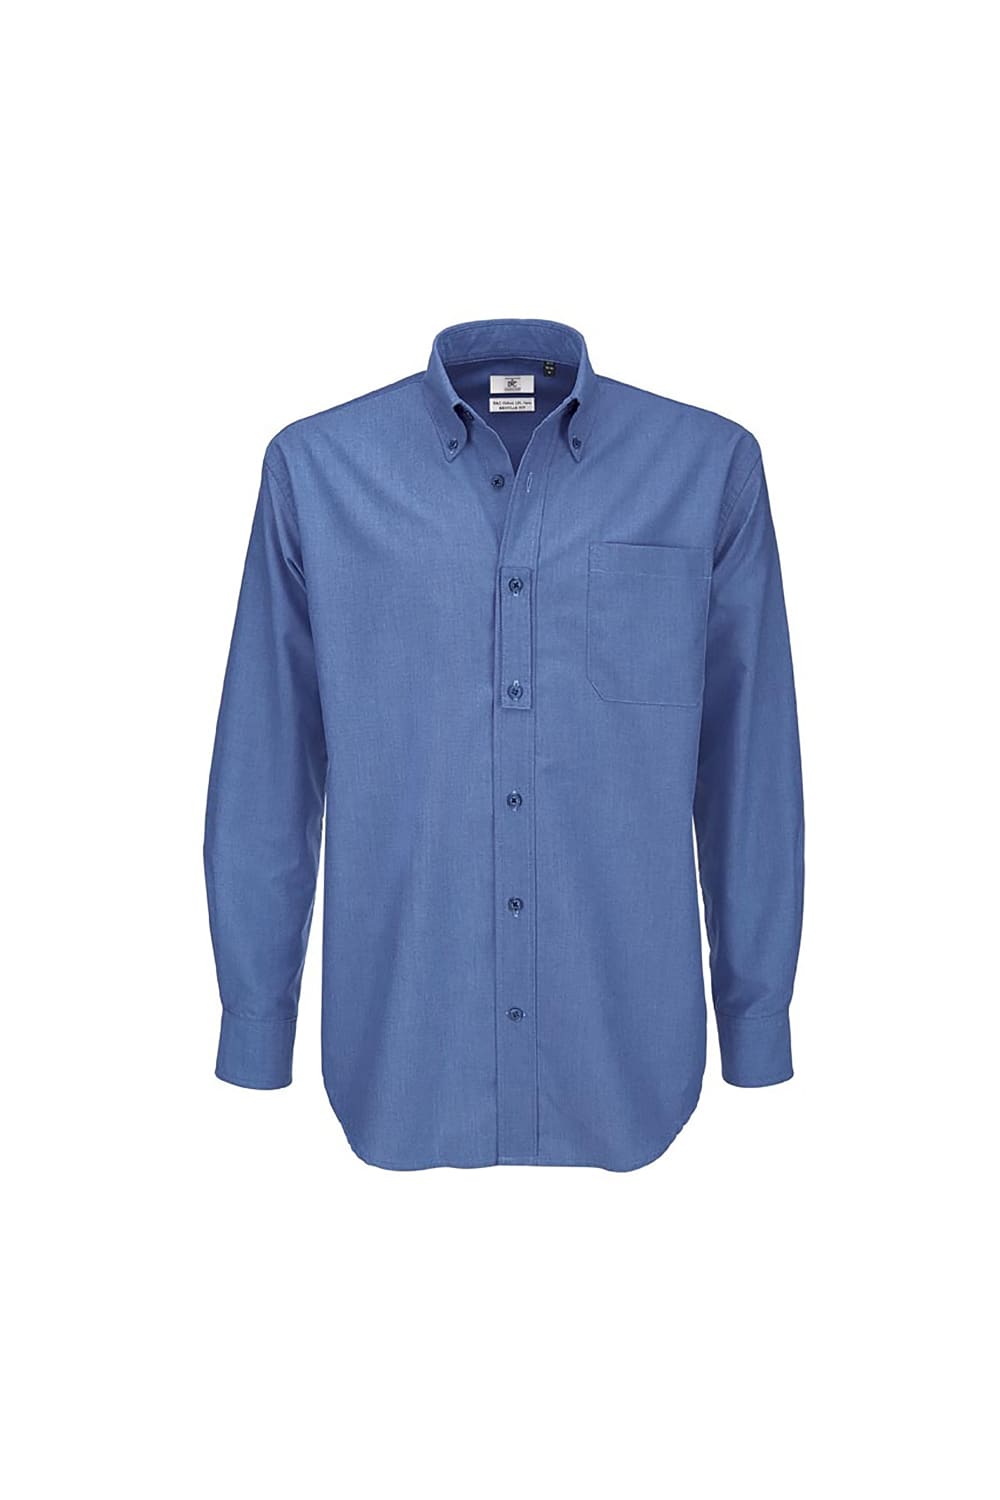 B&C Mens Oxford Long Sleeve Shirt / Mens Shirts (Blue Chip)